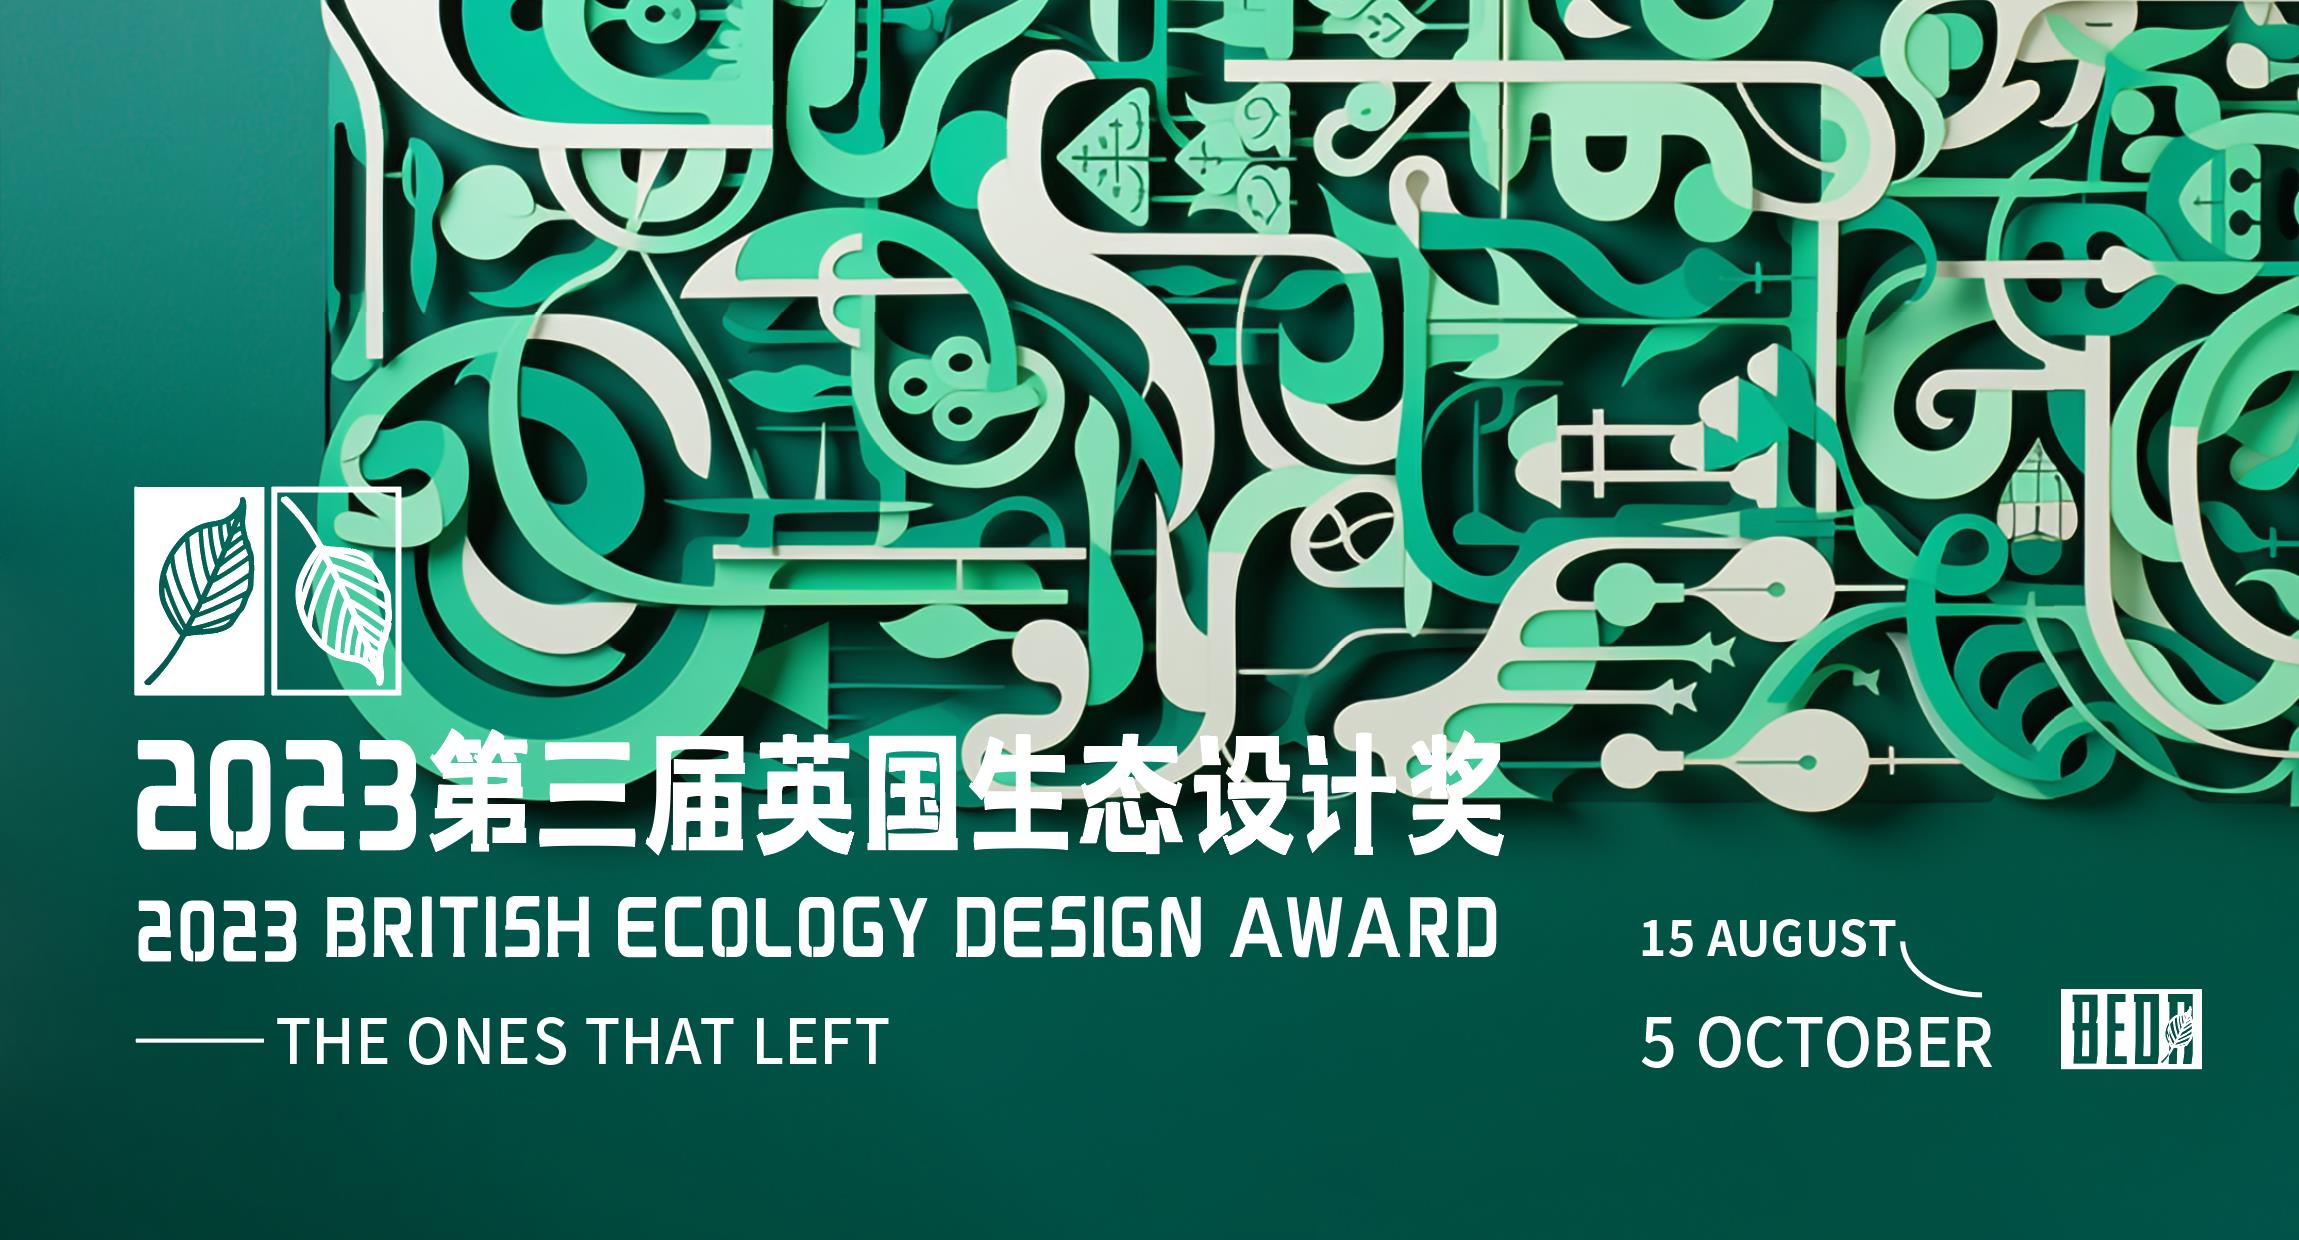 [章程]2023第三届英国生态设计奖-CNYISAI艺赛